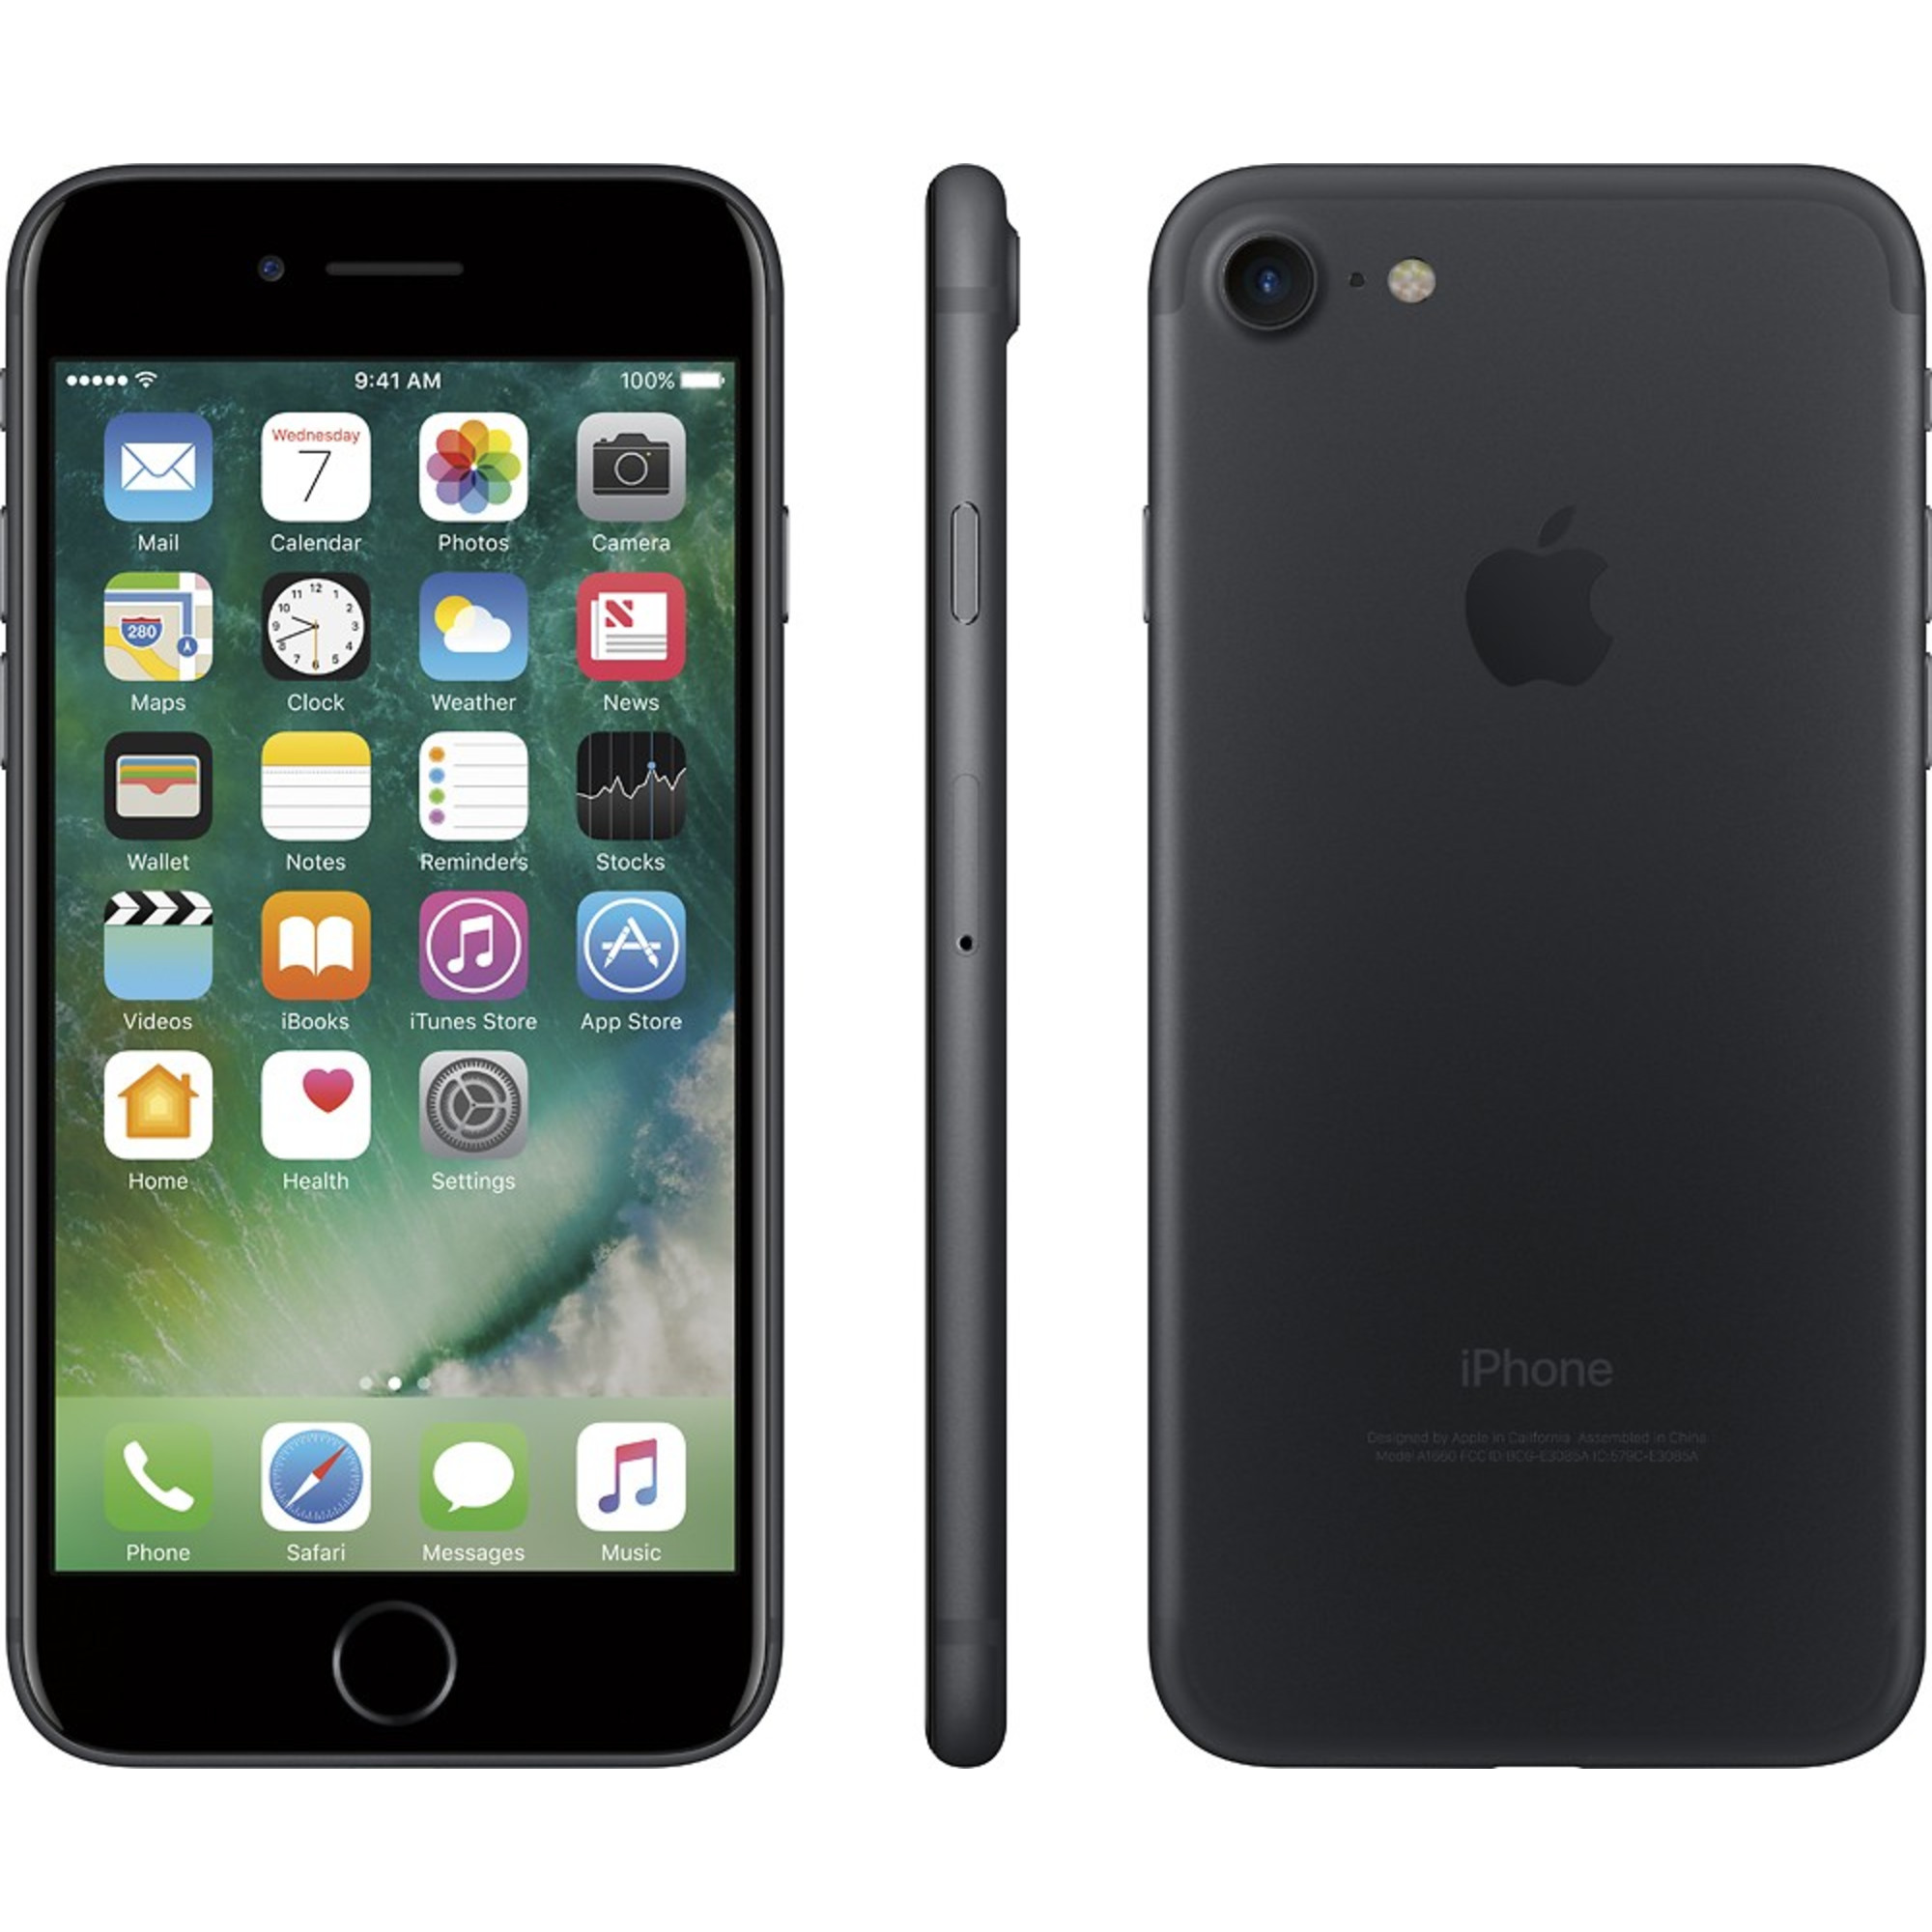 Apple iPhone 7 32GB Fully Unlocked (Verizon + Sprint + GSM Unlocked) - Black (Used) - image 3 of 3